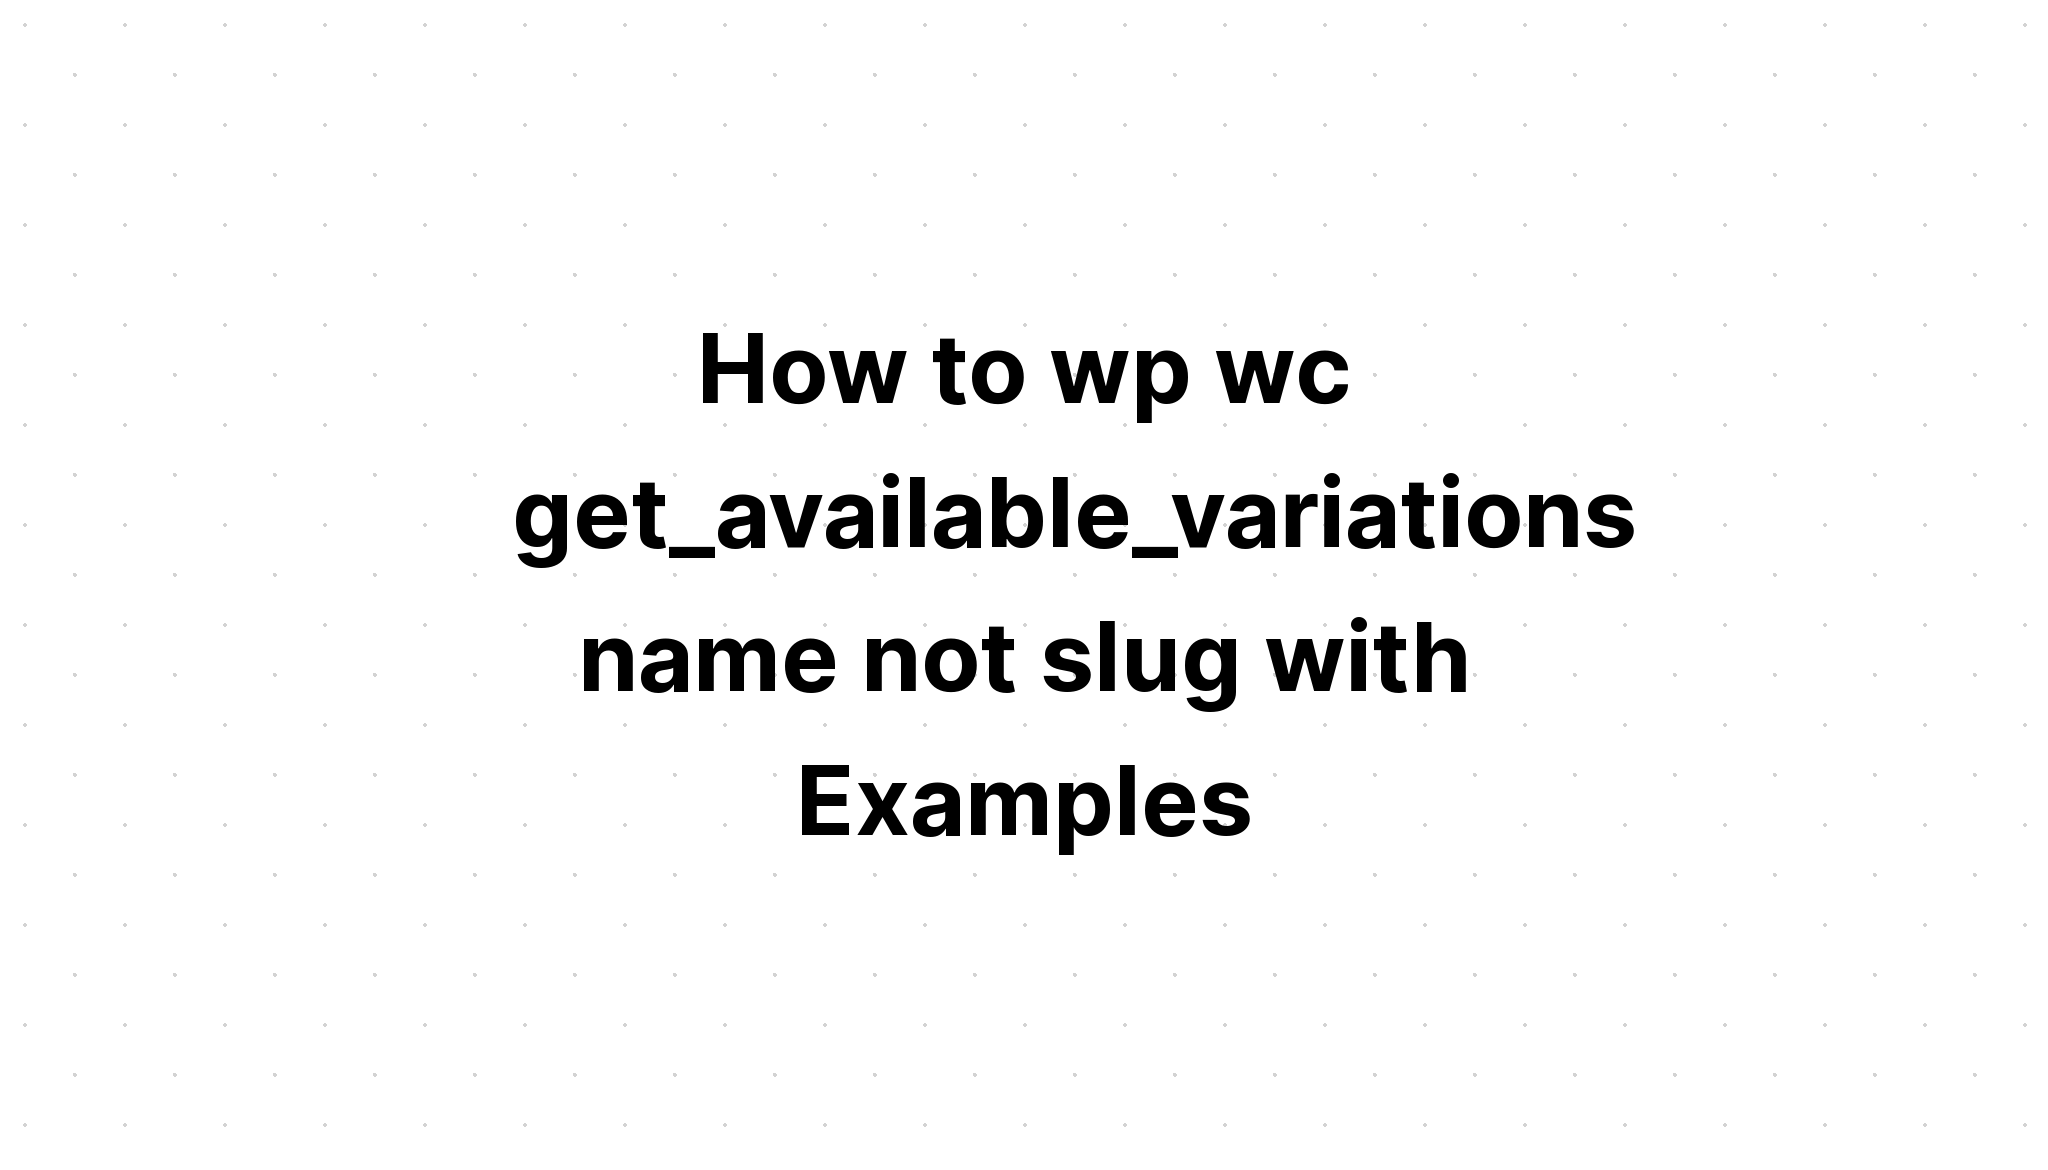 Cách wp tên wc get_available_variations không sên với Ví dụ